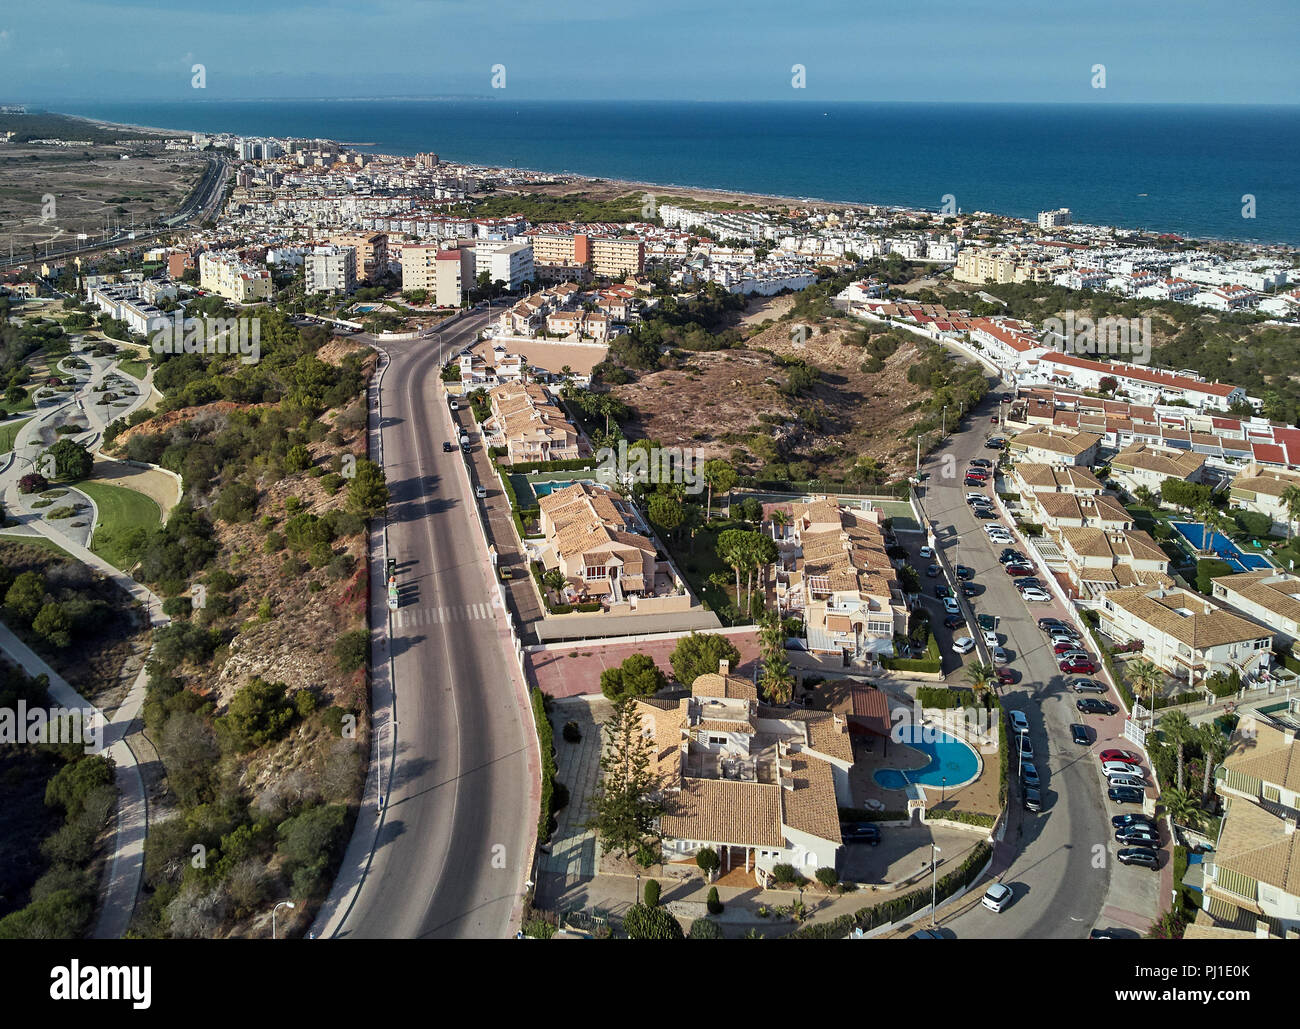 Vista panoramica aerea del paesaggio urbano della località spagnola di Torrevieja. Strade cittadine, case di architettura costiera e mare Mediterraneo in estate Foto Stock